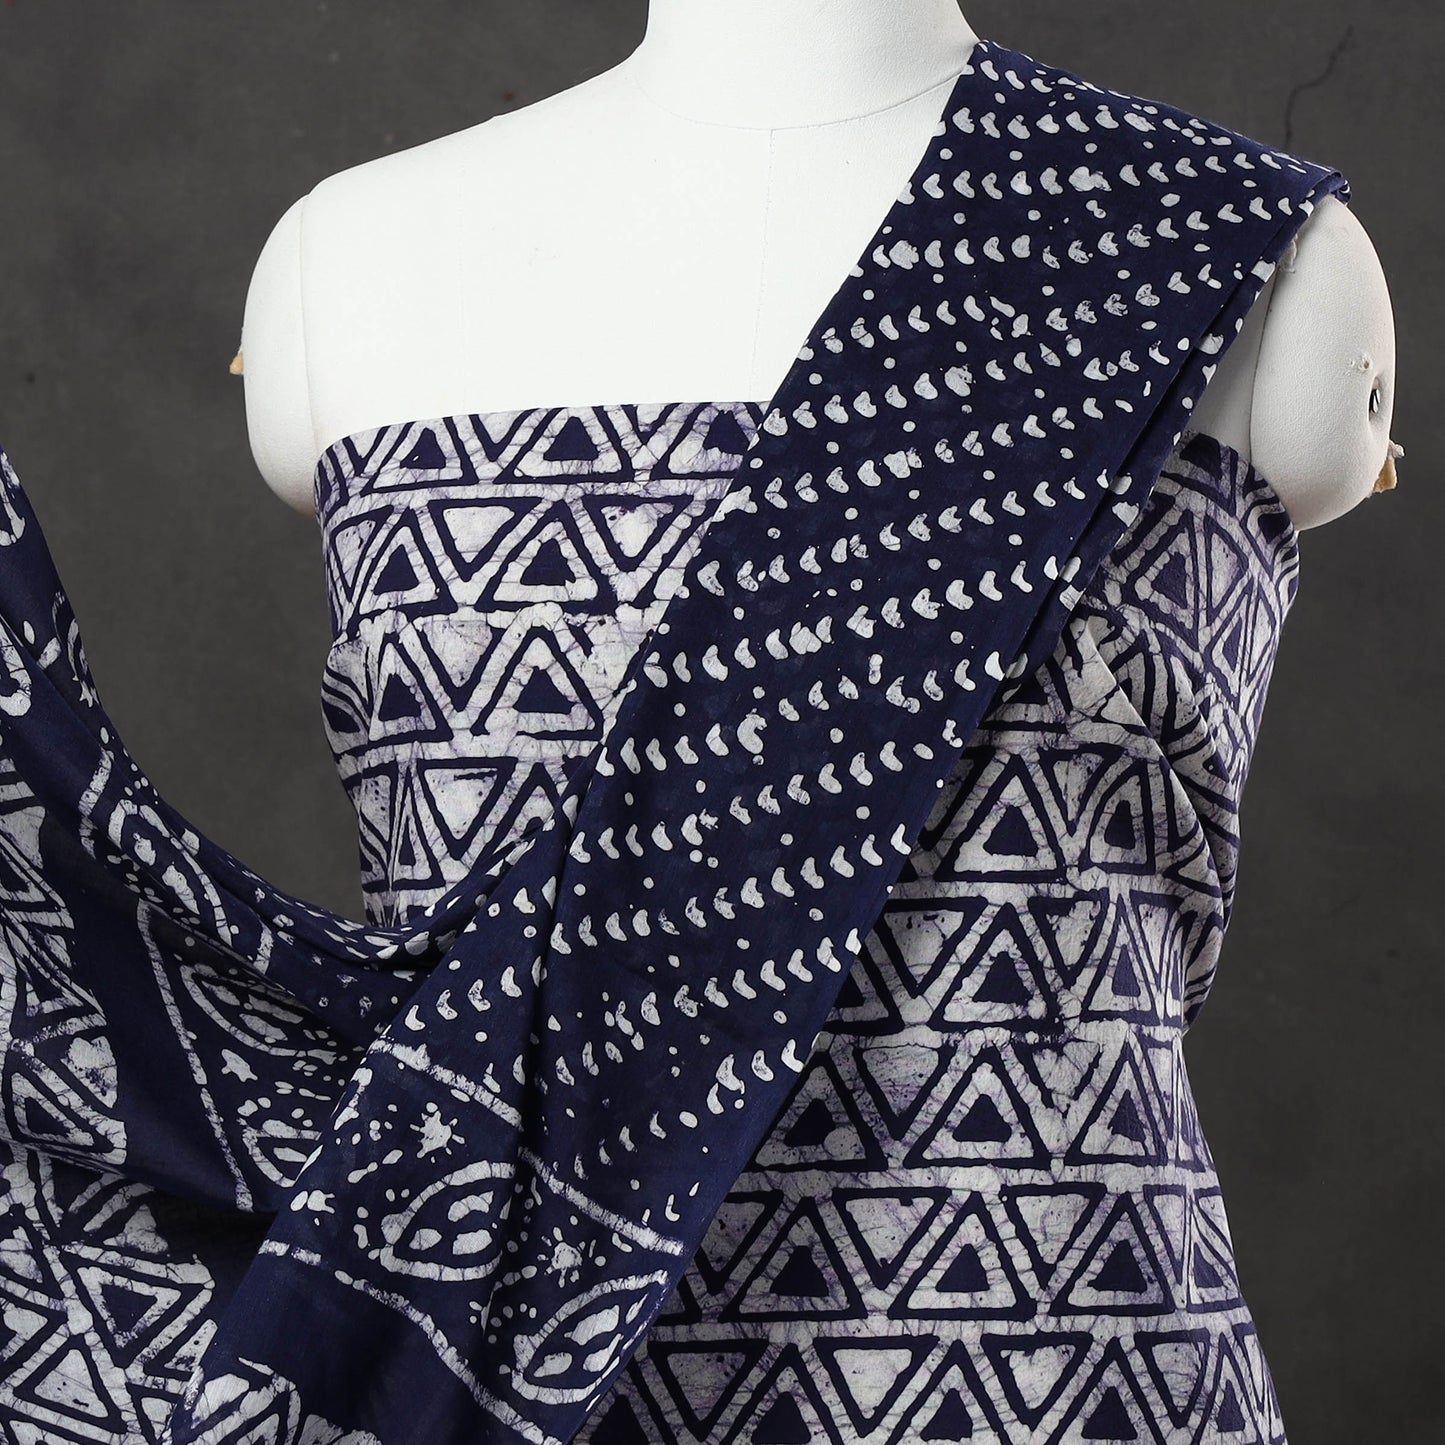 Blue - 3pc Kutch Batik Printed Cotton Suit Material Set 07